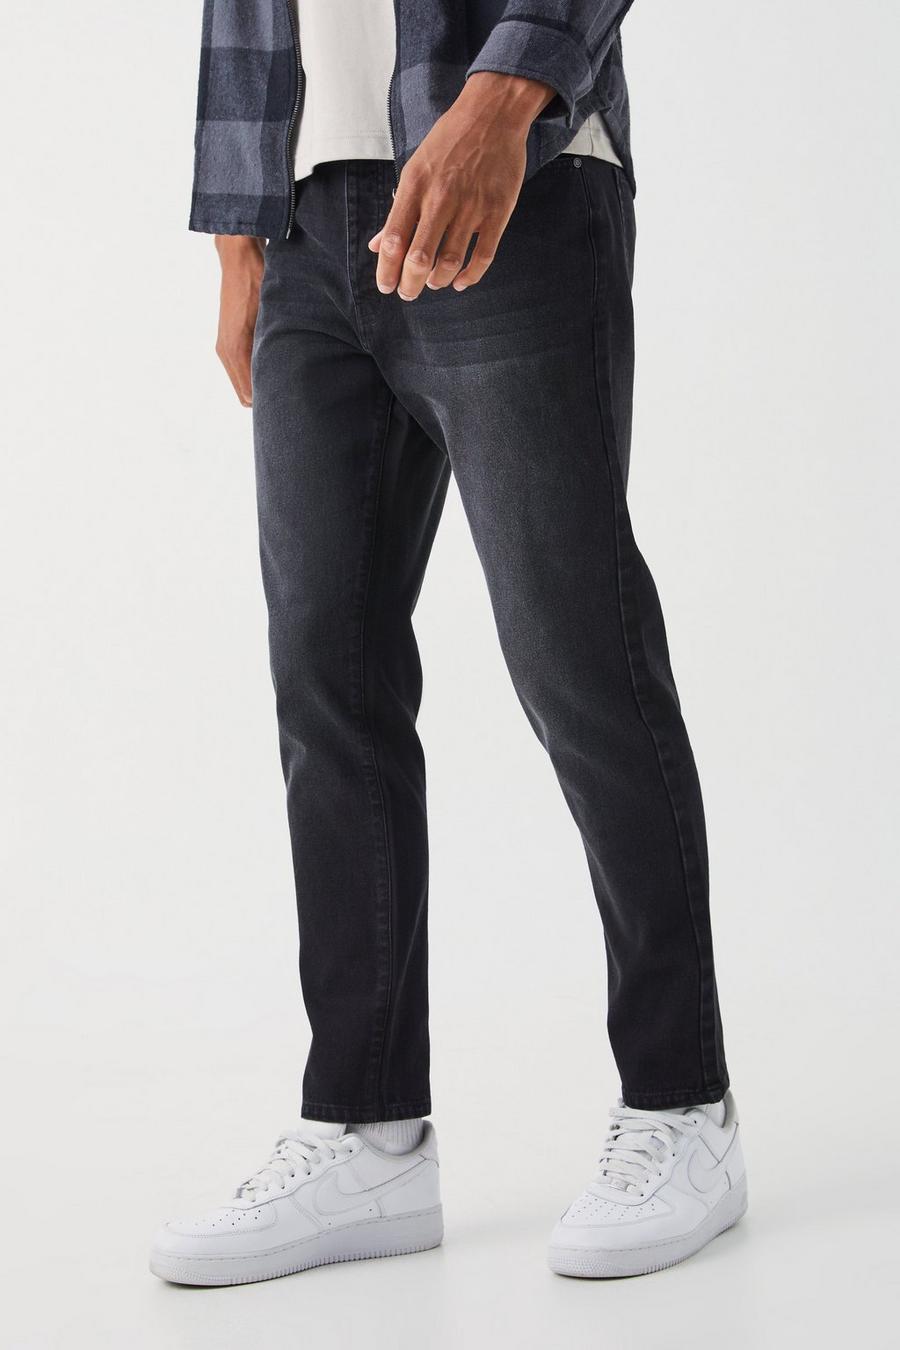 Washed black Tall Tapered jeans i rigid denim